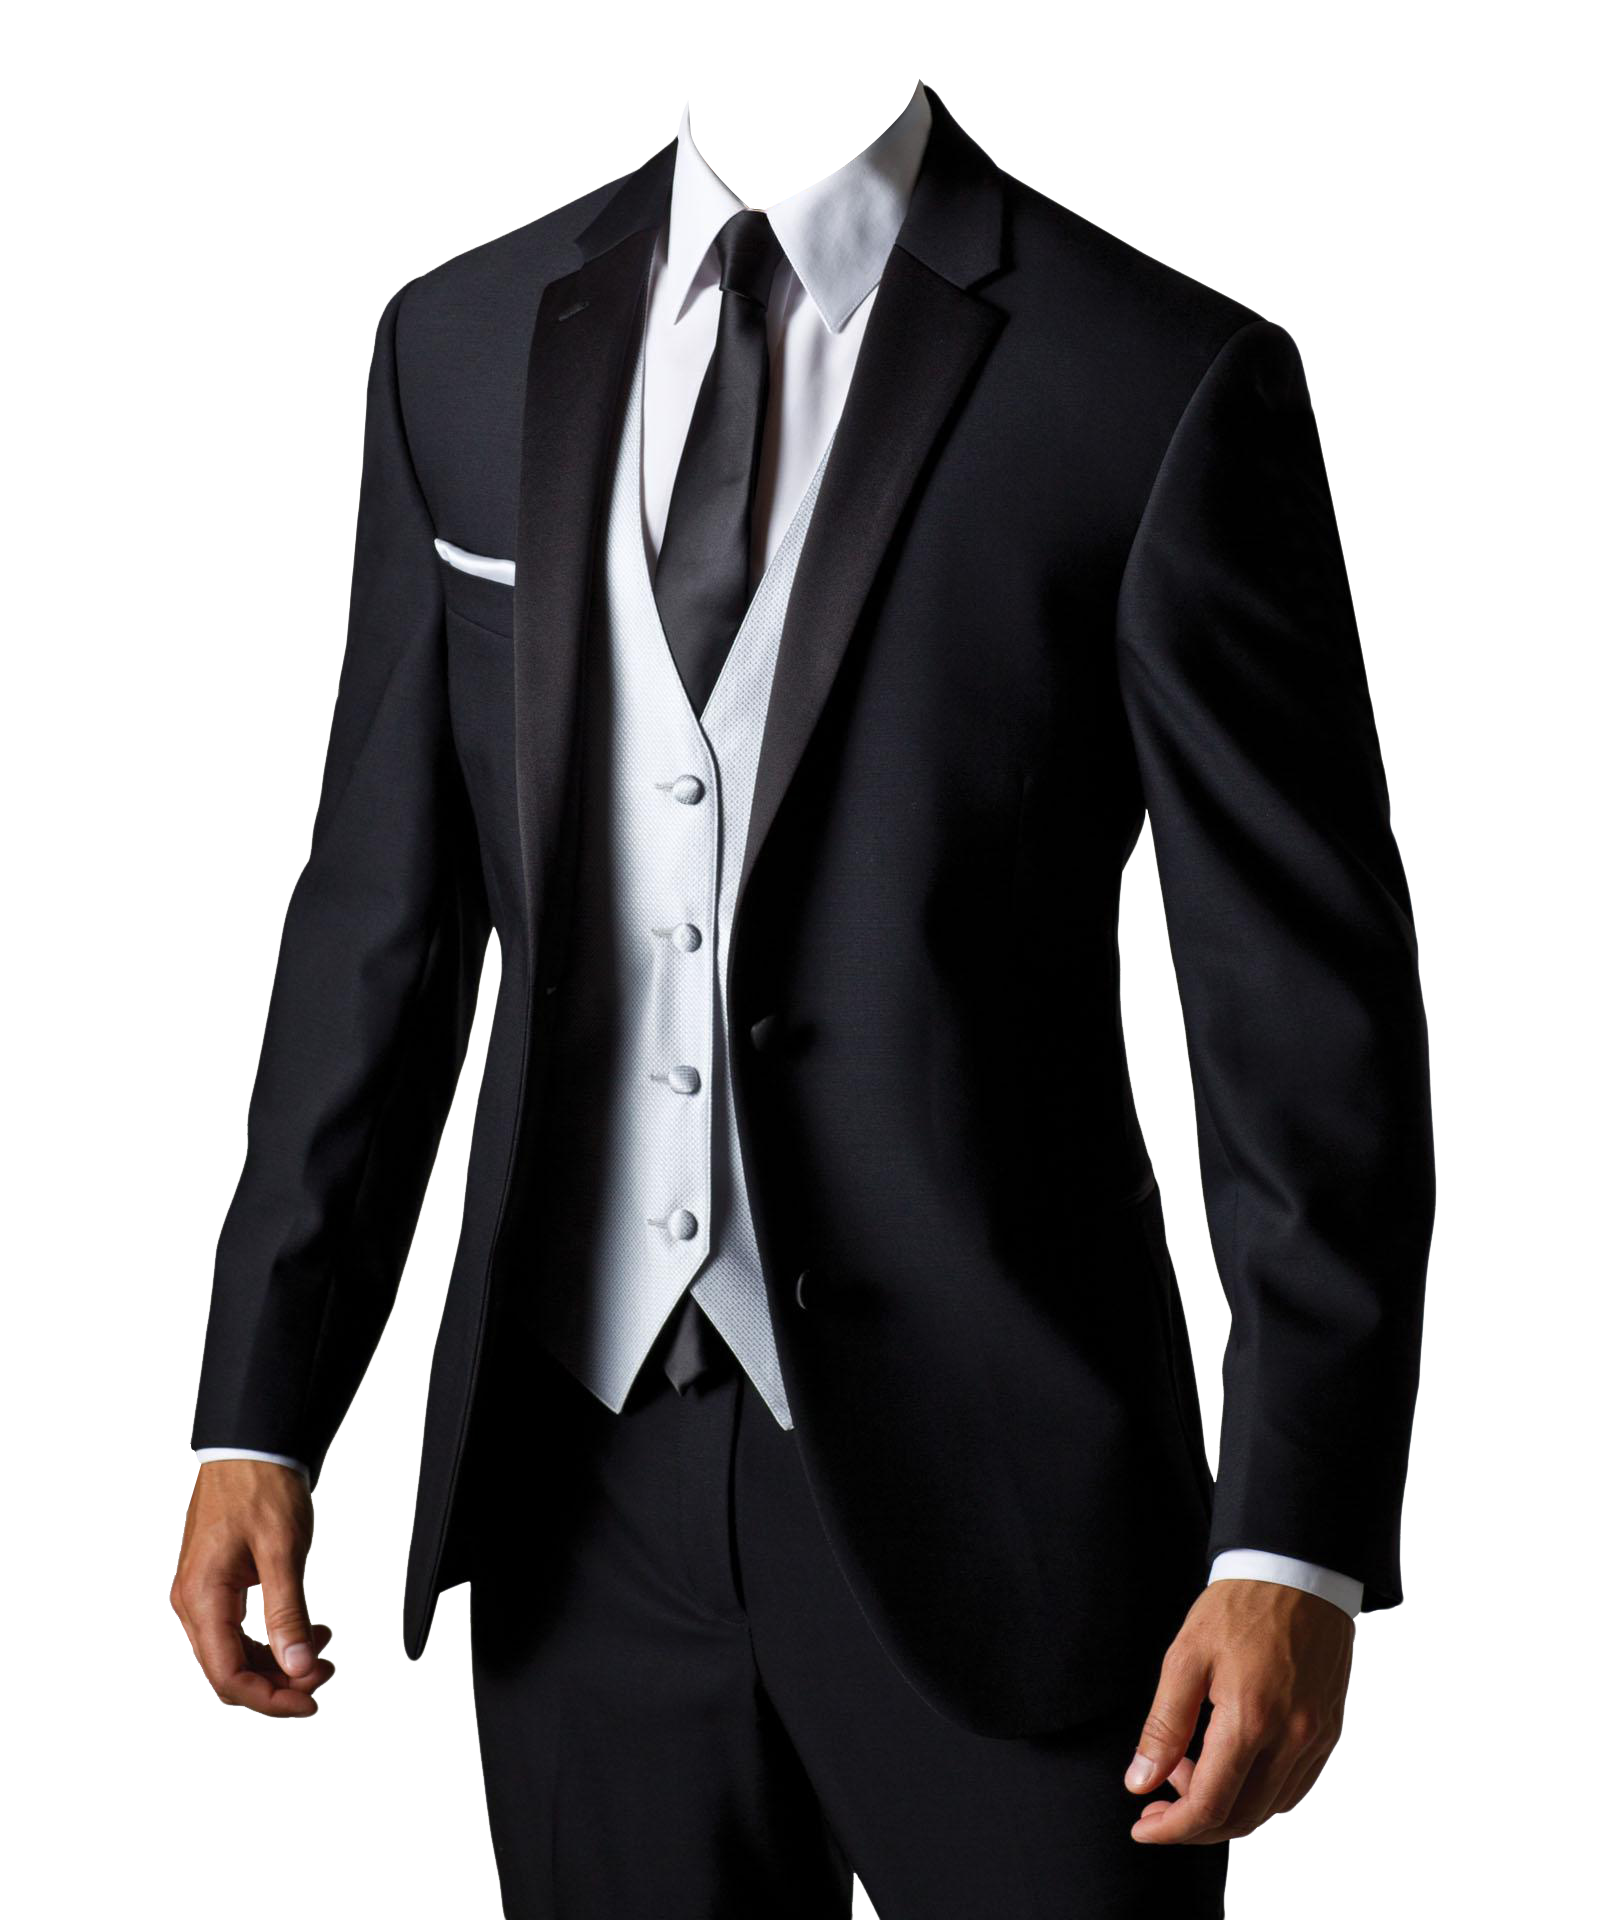 Blazer Men Suit PNG HD Quality